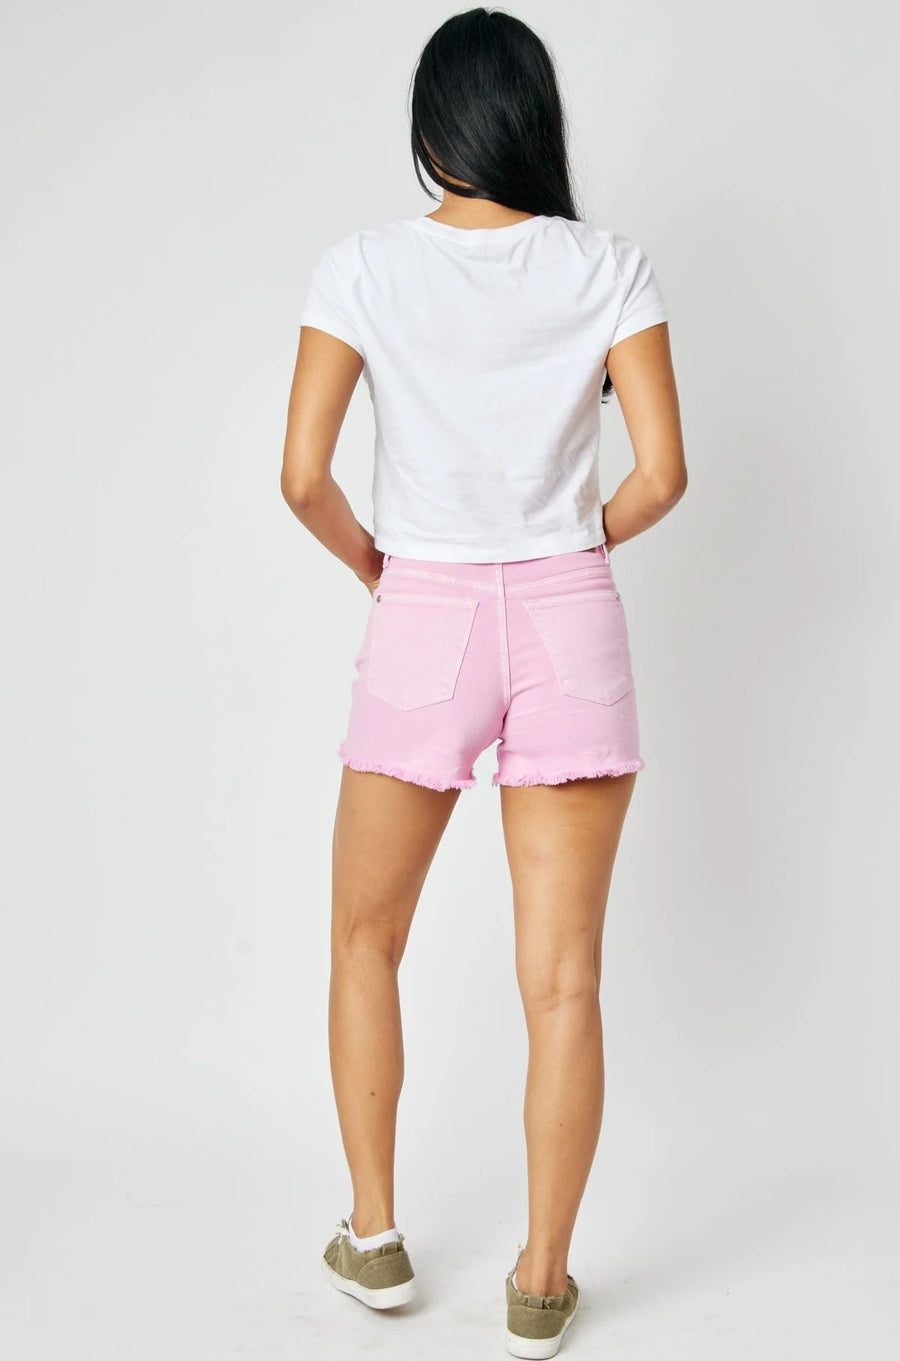 Judy Blue Mid Rise Light Pink Fray Hem Shorts